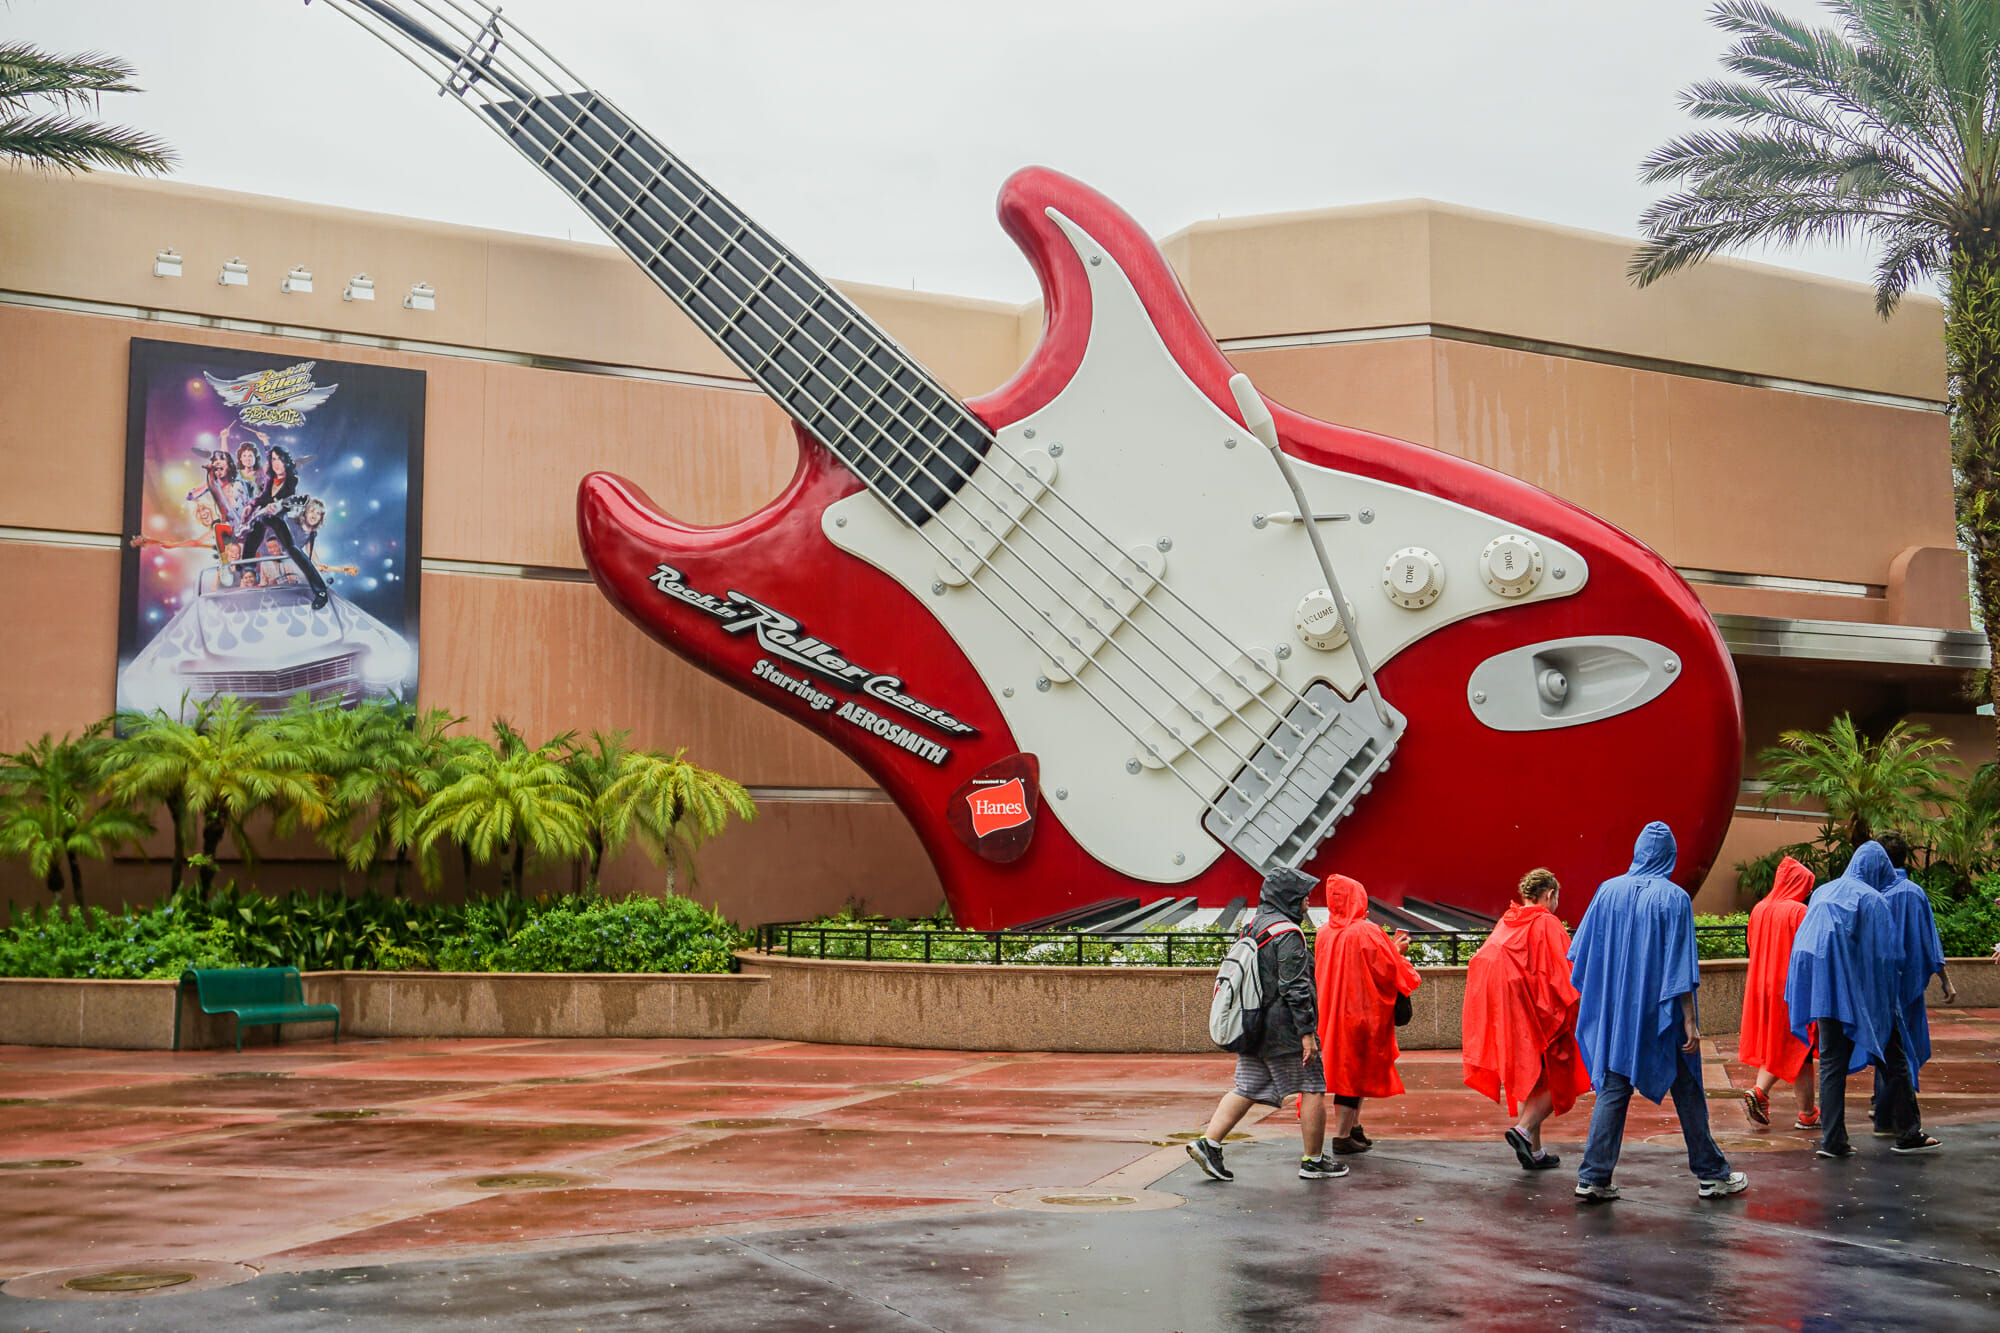 Foto da guitarra da atração Rock 'n' Roller Coaster, do Hollywood Studios, em um dia nublado. Os visitantes que estão passando vestem capas de chuva.